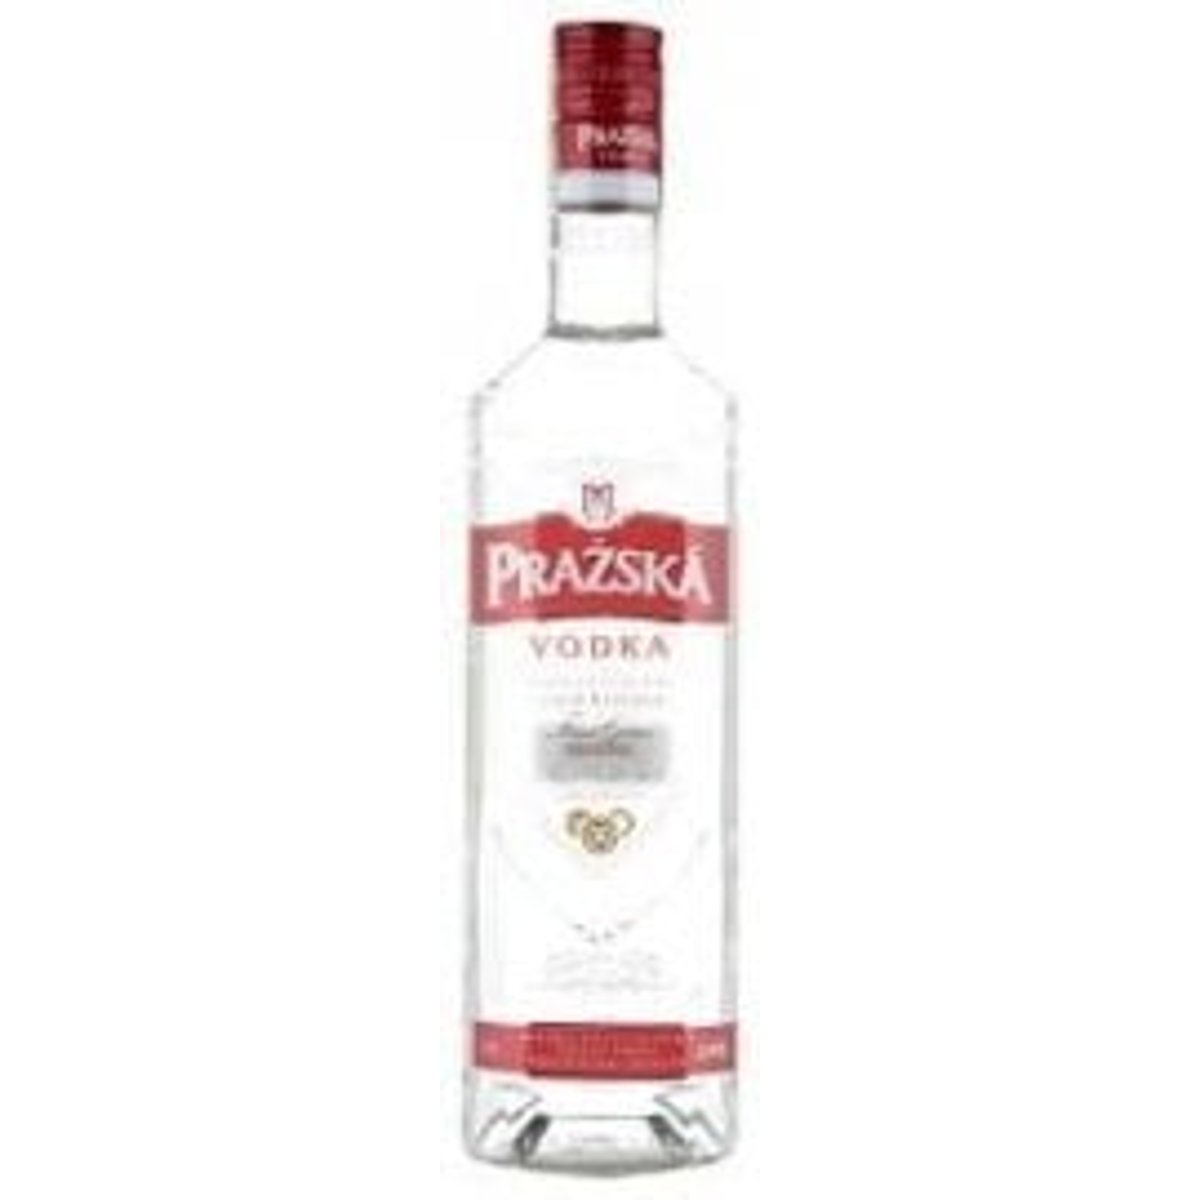 Pražská vodka Premium 37,5% v akci